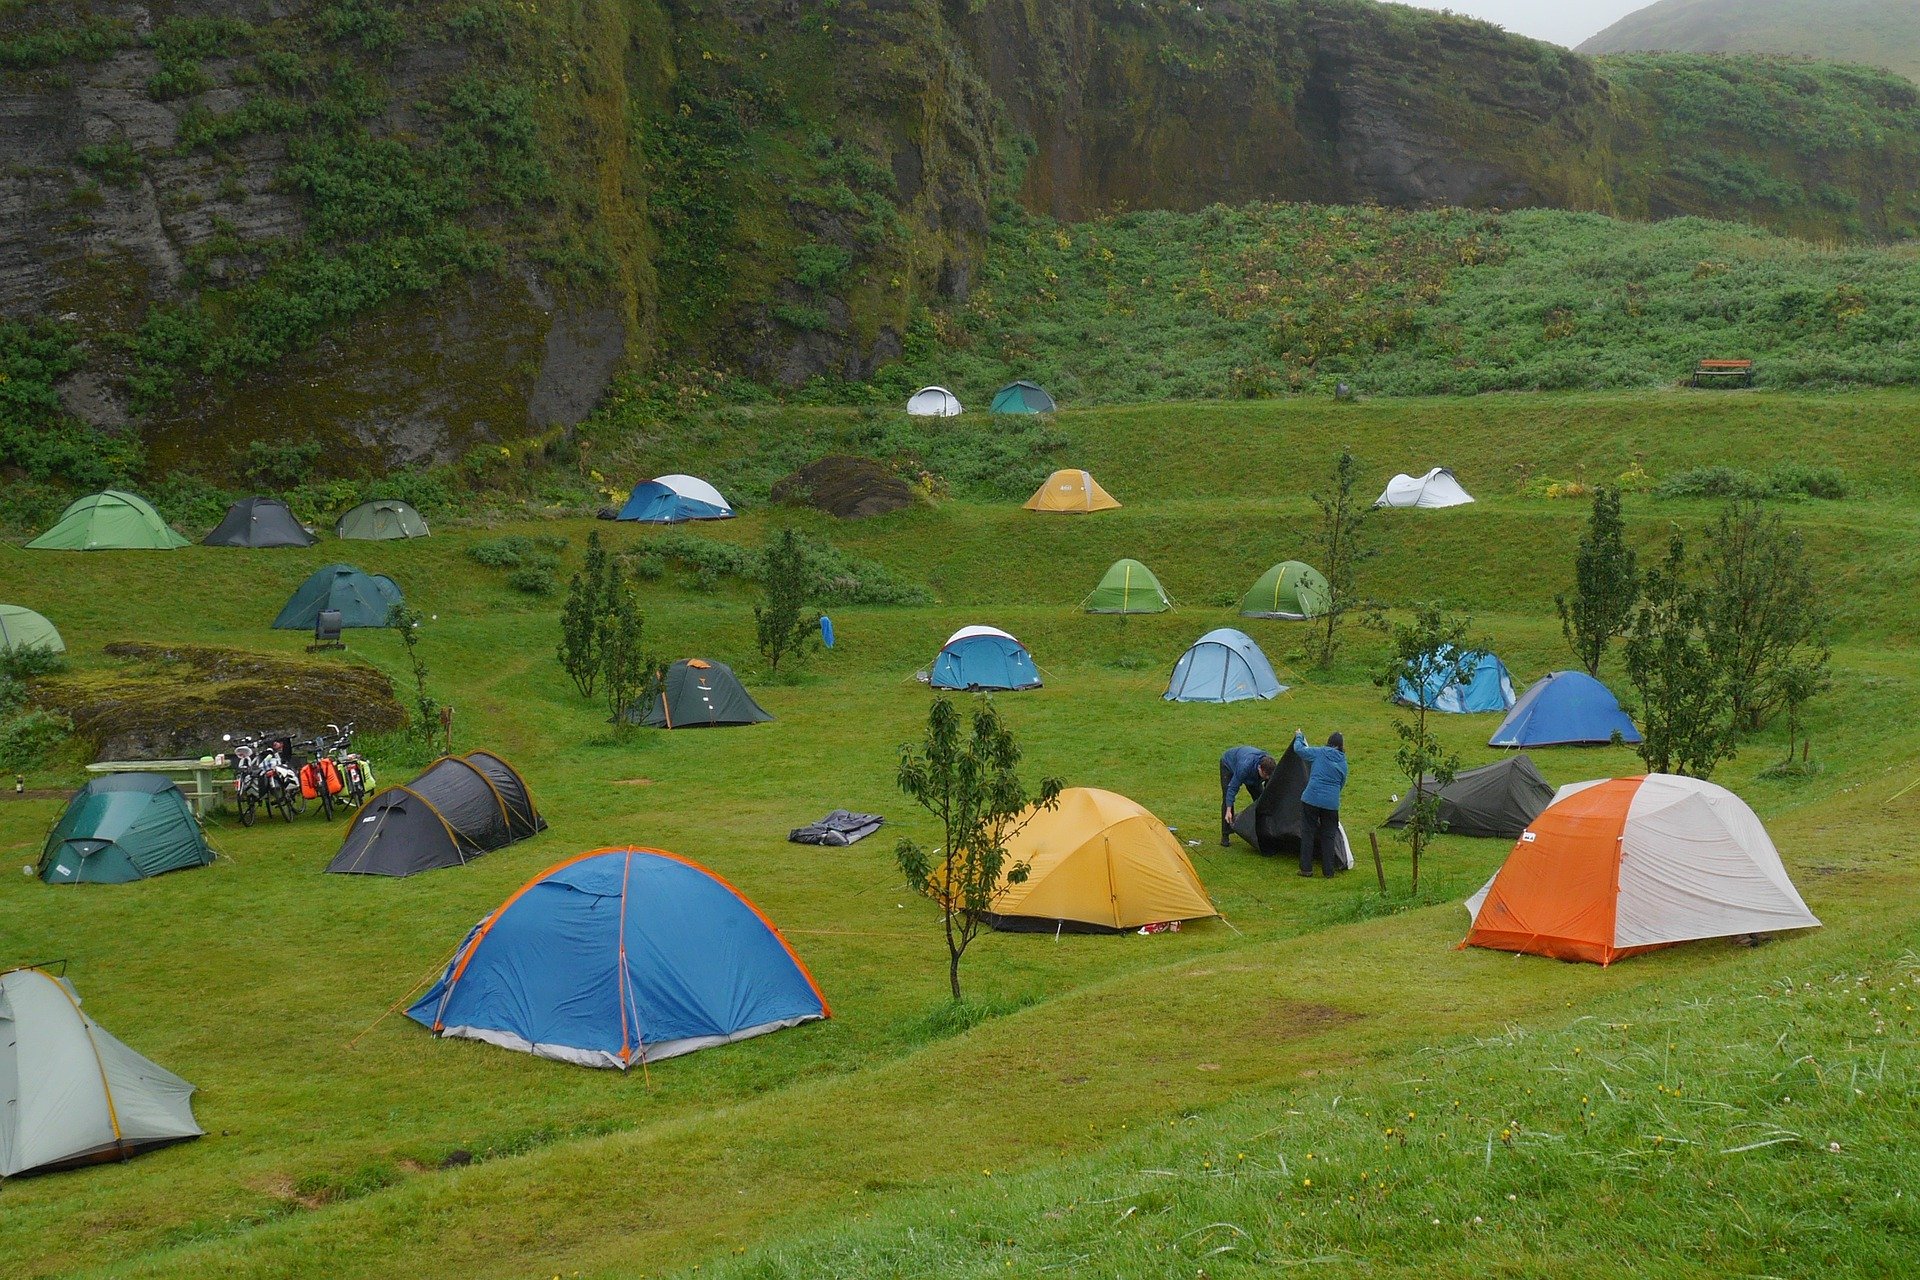 Camping rus. Палаточный лагерь. Палаточный городок. Палаточный кемпинг. Палатки для палаточного лагеря.